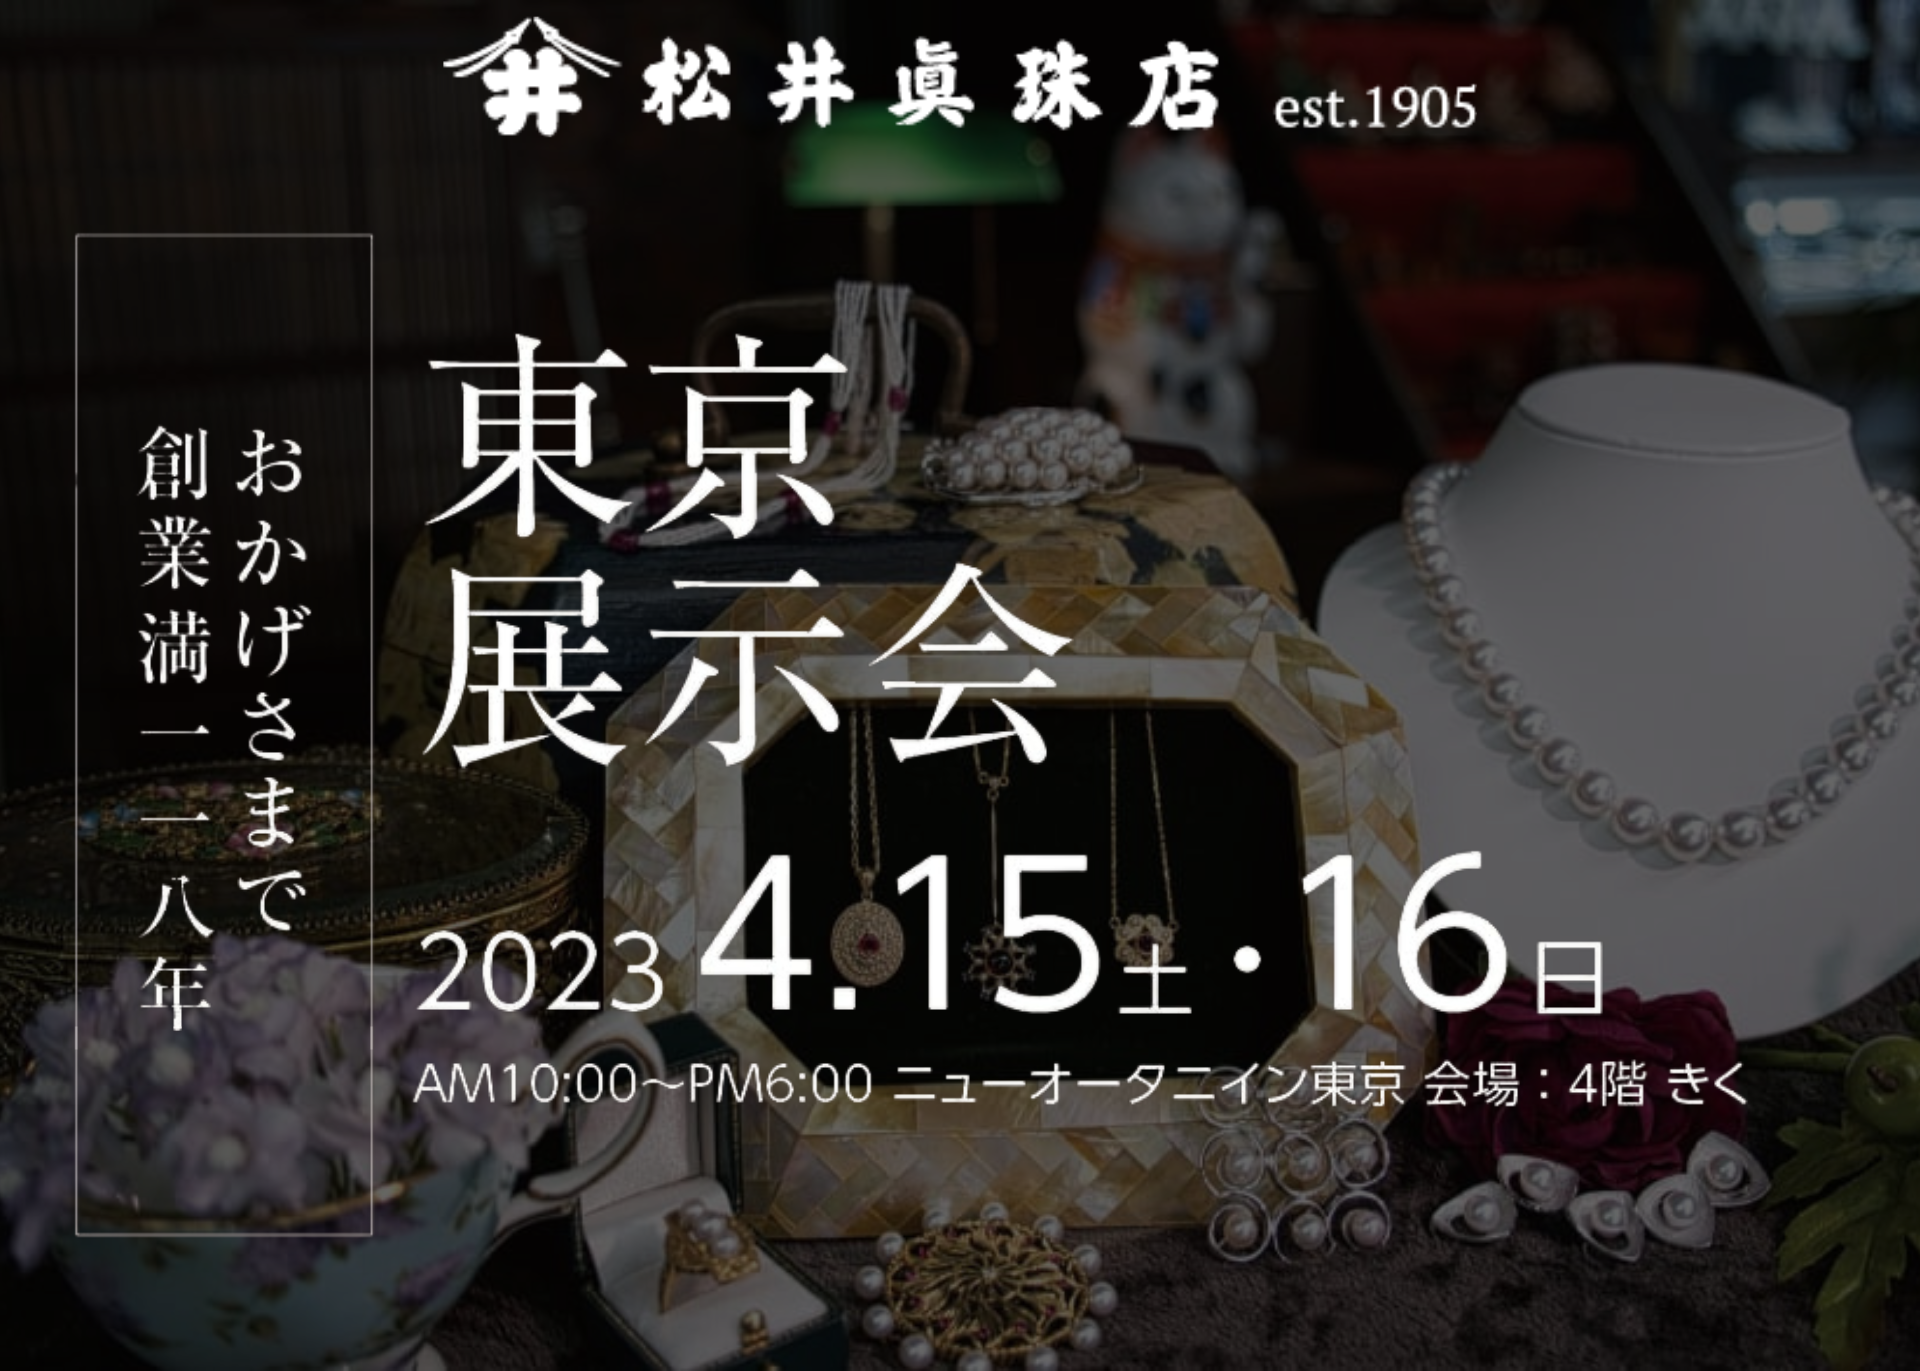 2023年東京展示会開催のお知らせ 松井真珠